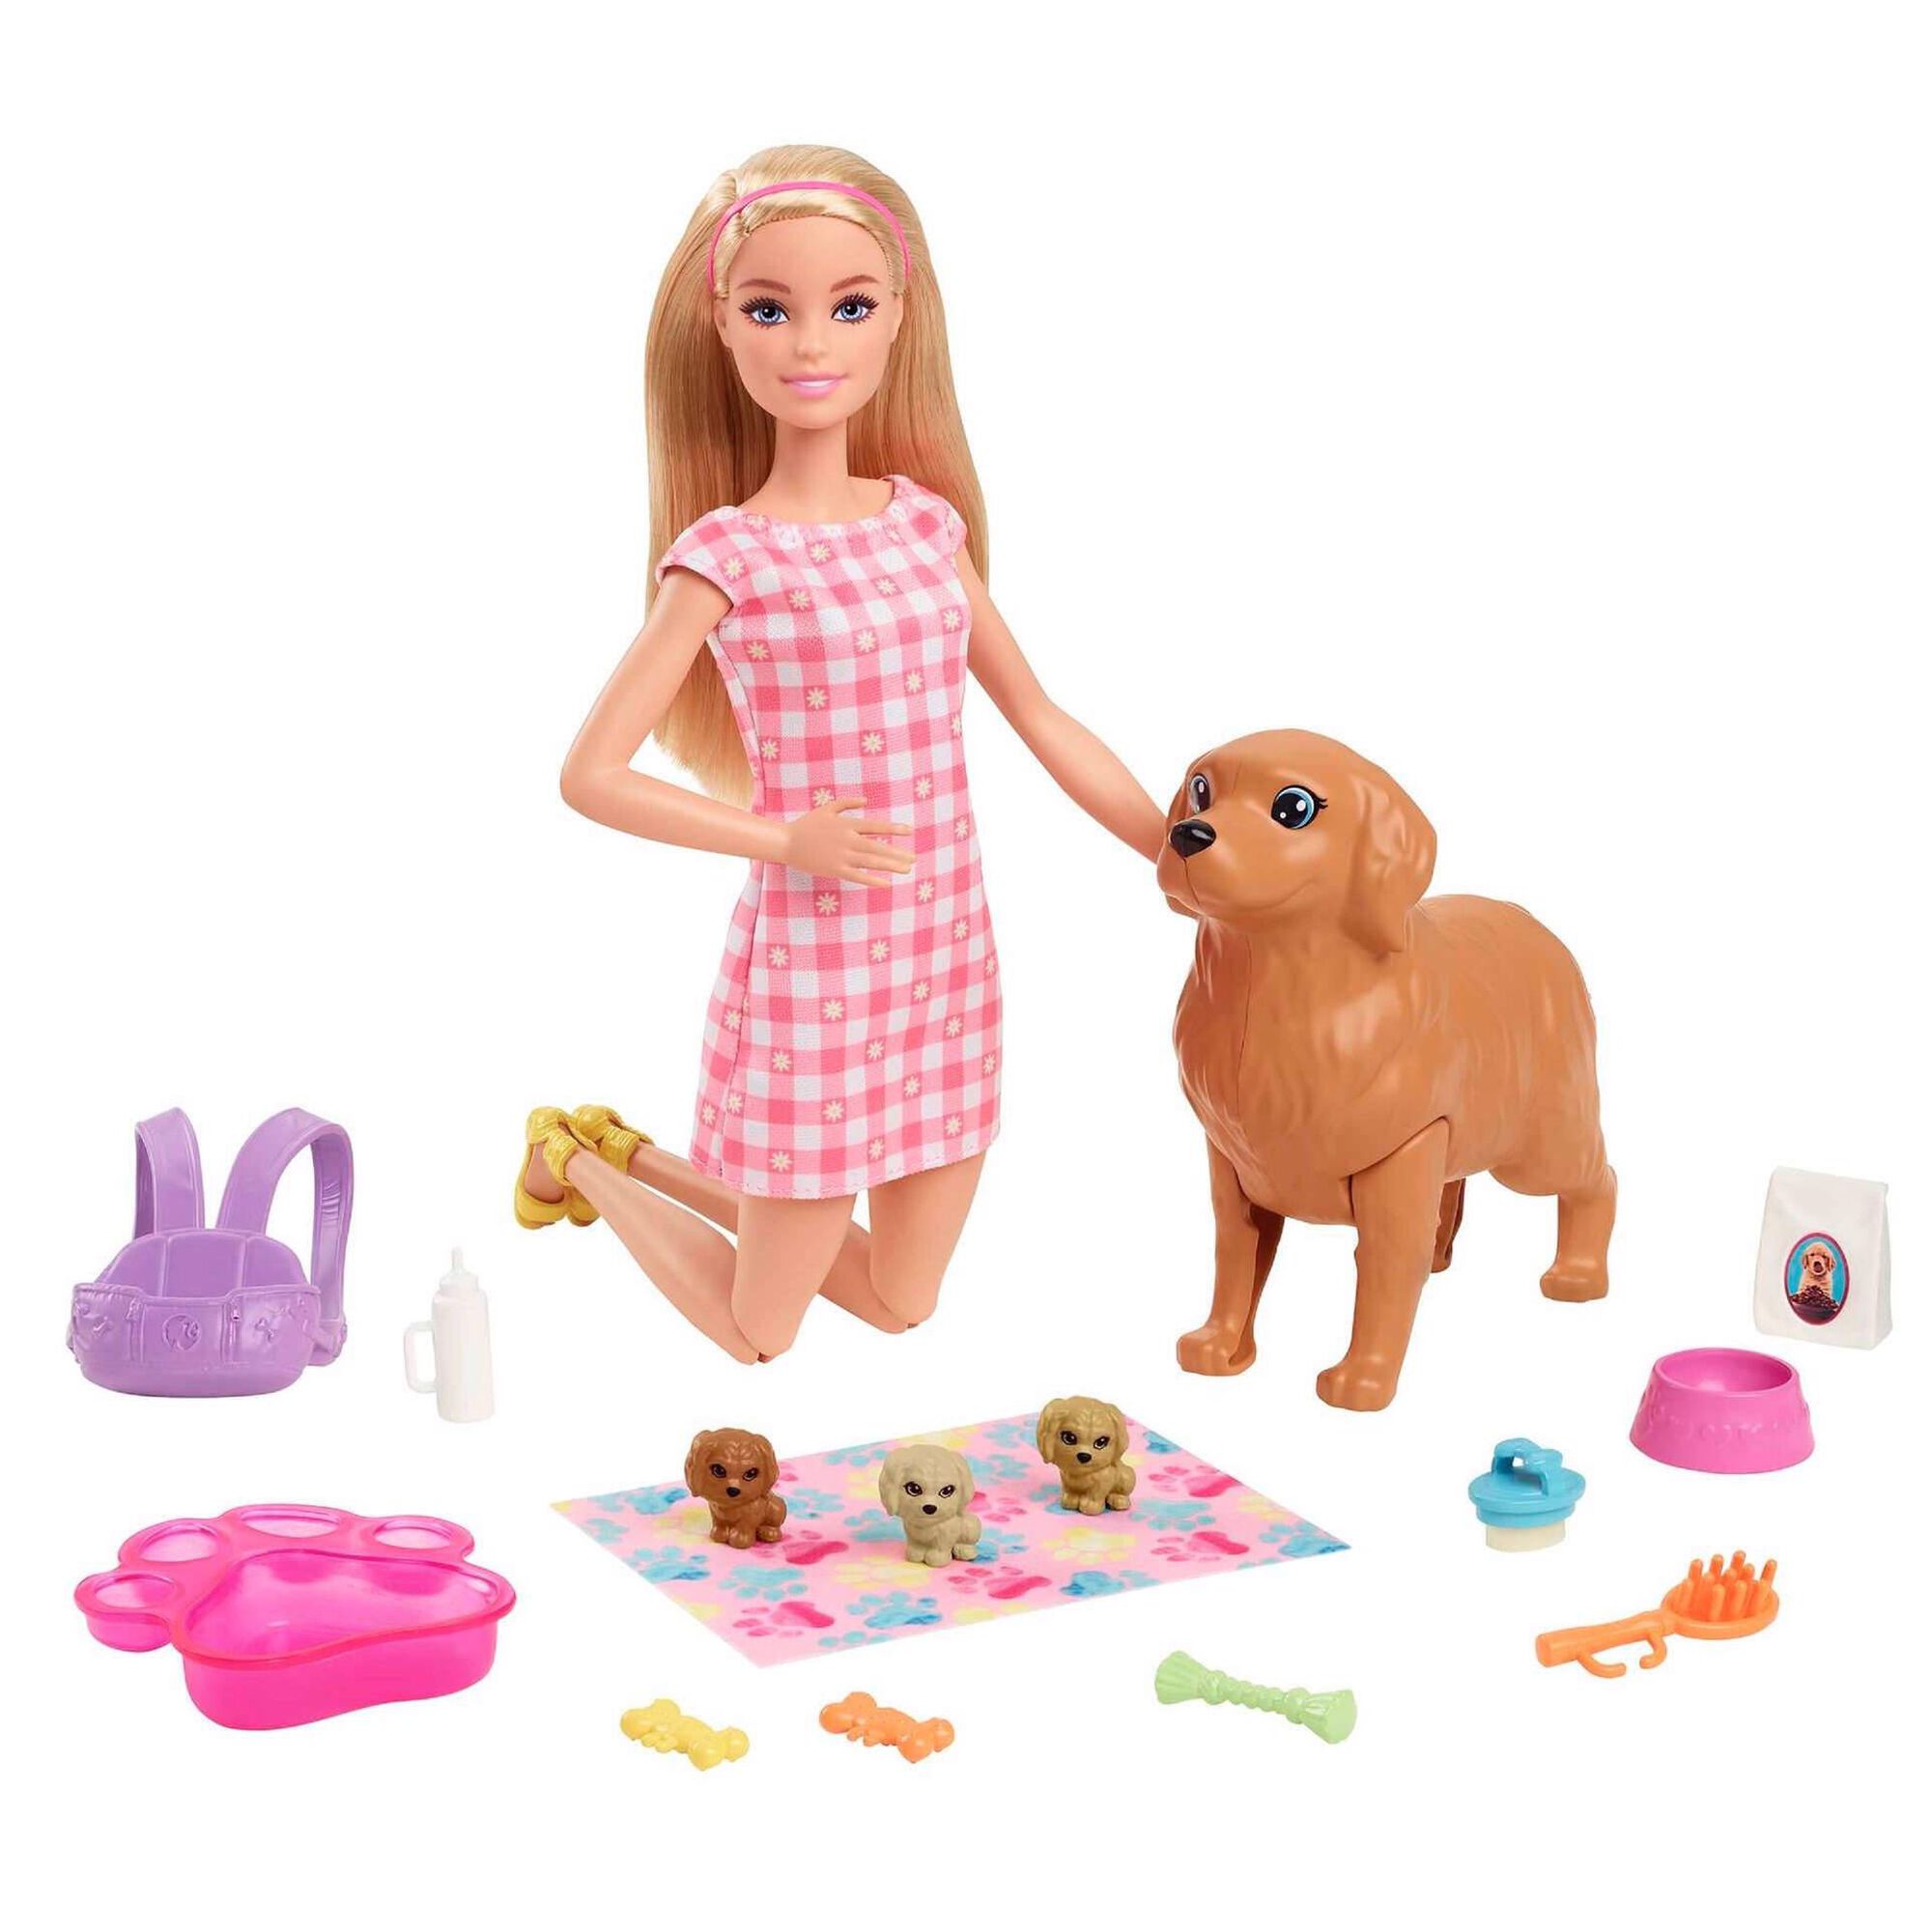 DIY Miniaturas de Bonecas: Barbie Grávida, Bebê Recém-Nascido